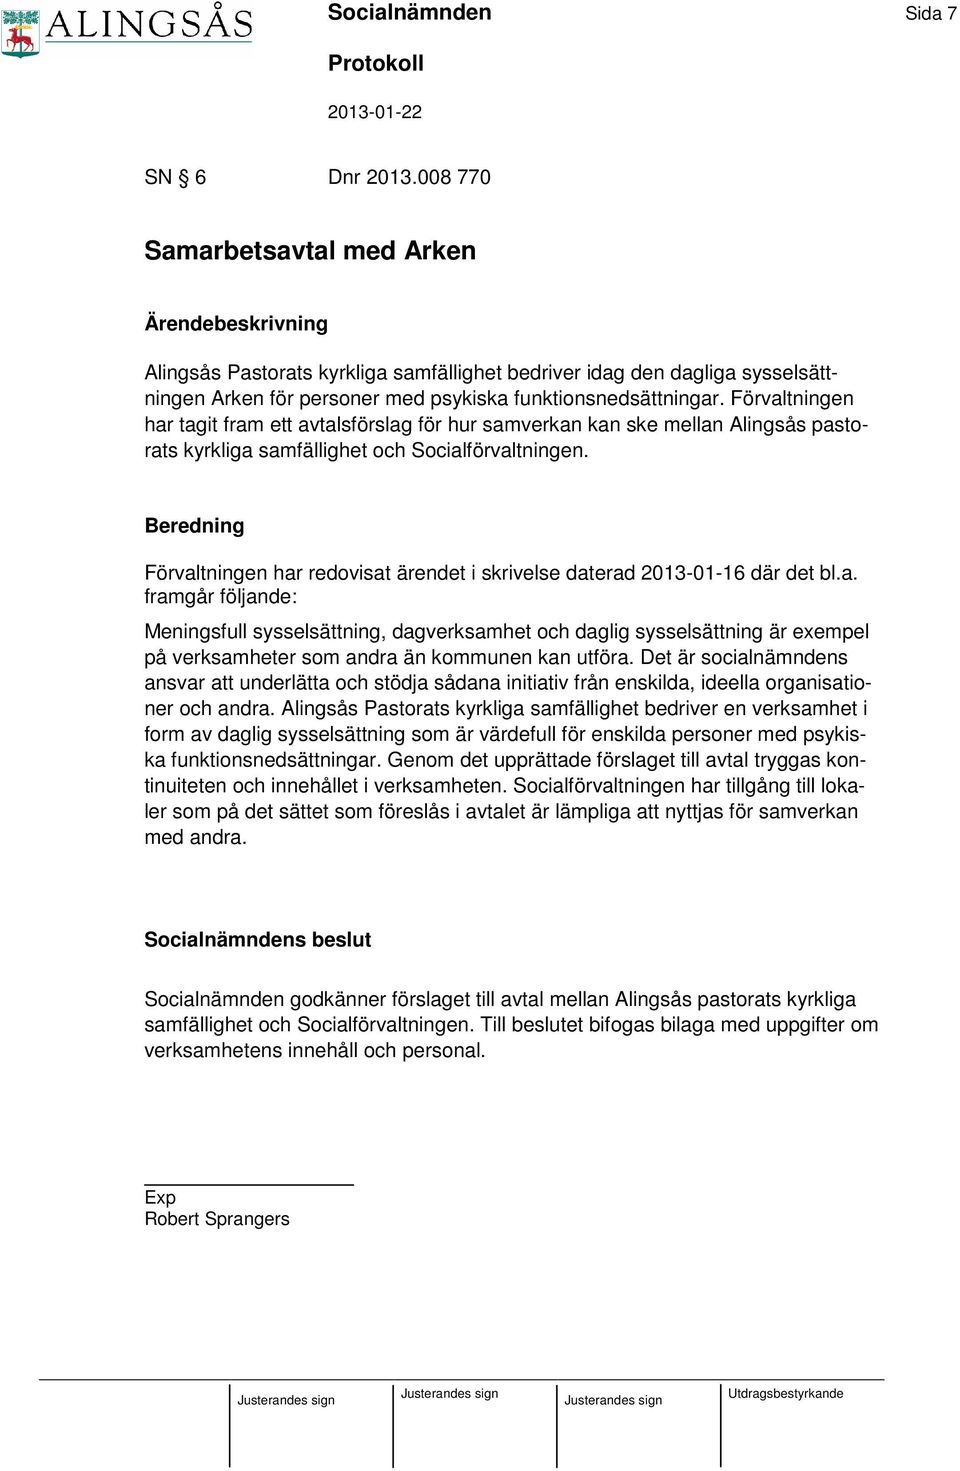 Förvaltningen har tagit fram ett avtalsförslag för hur samverkan kan ske mellan Alingsås pastorats kyrkliga samfällighet och Socialförvaltningen.